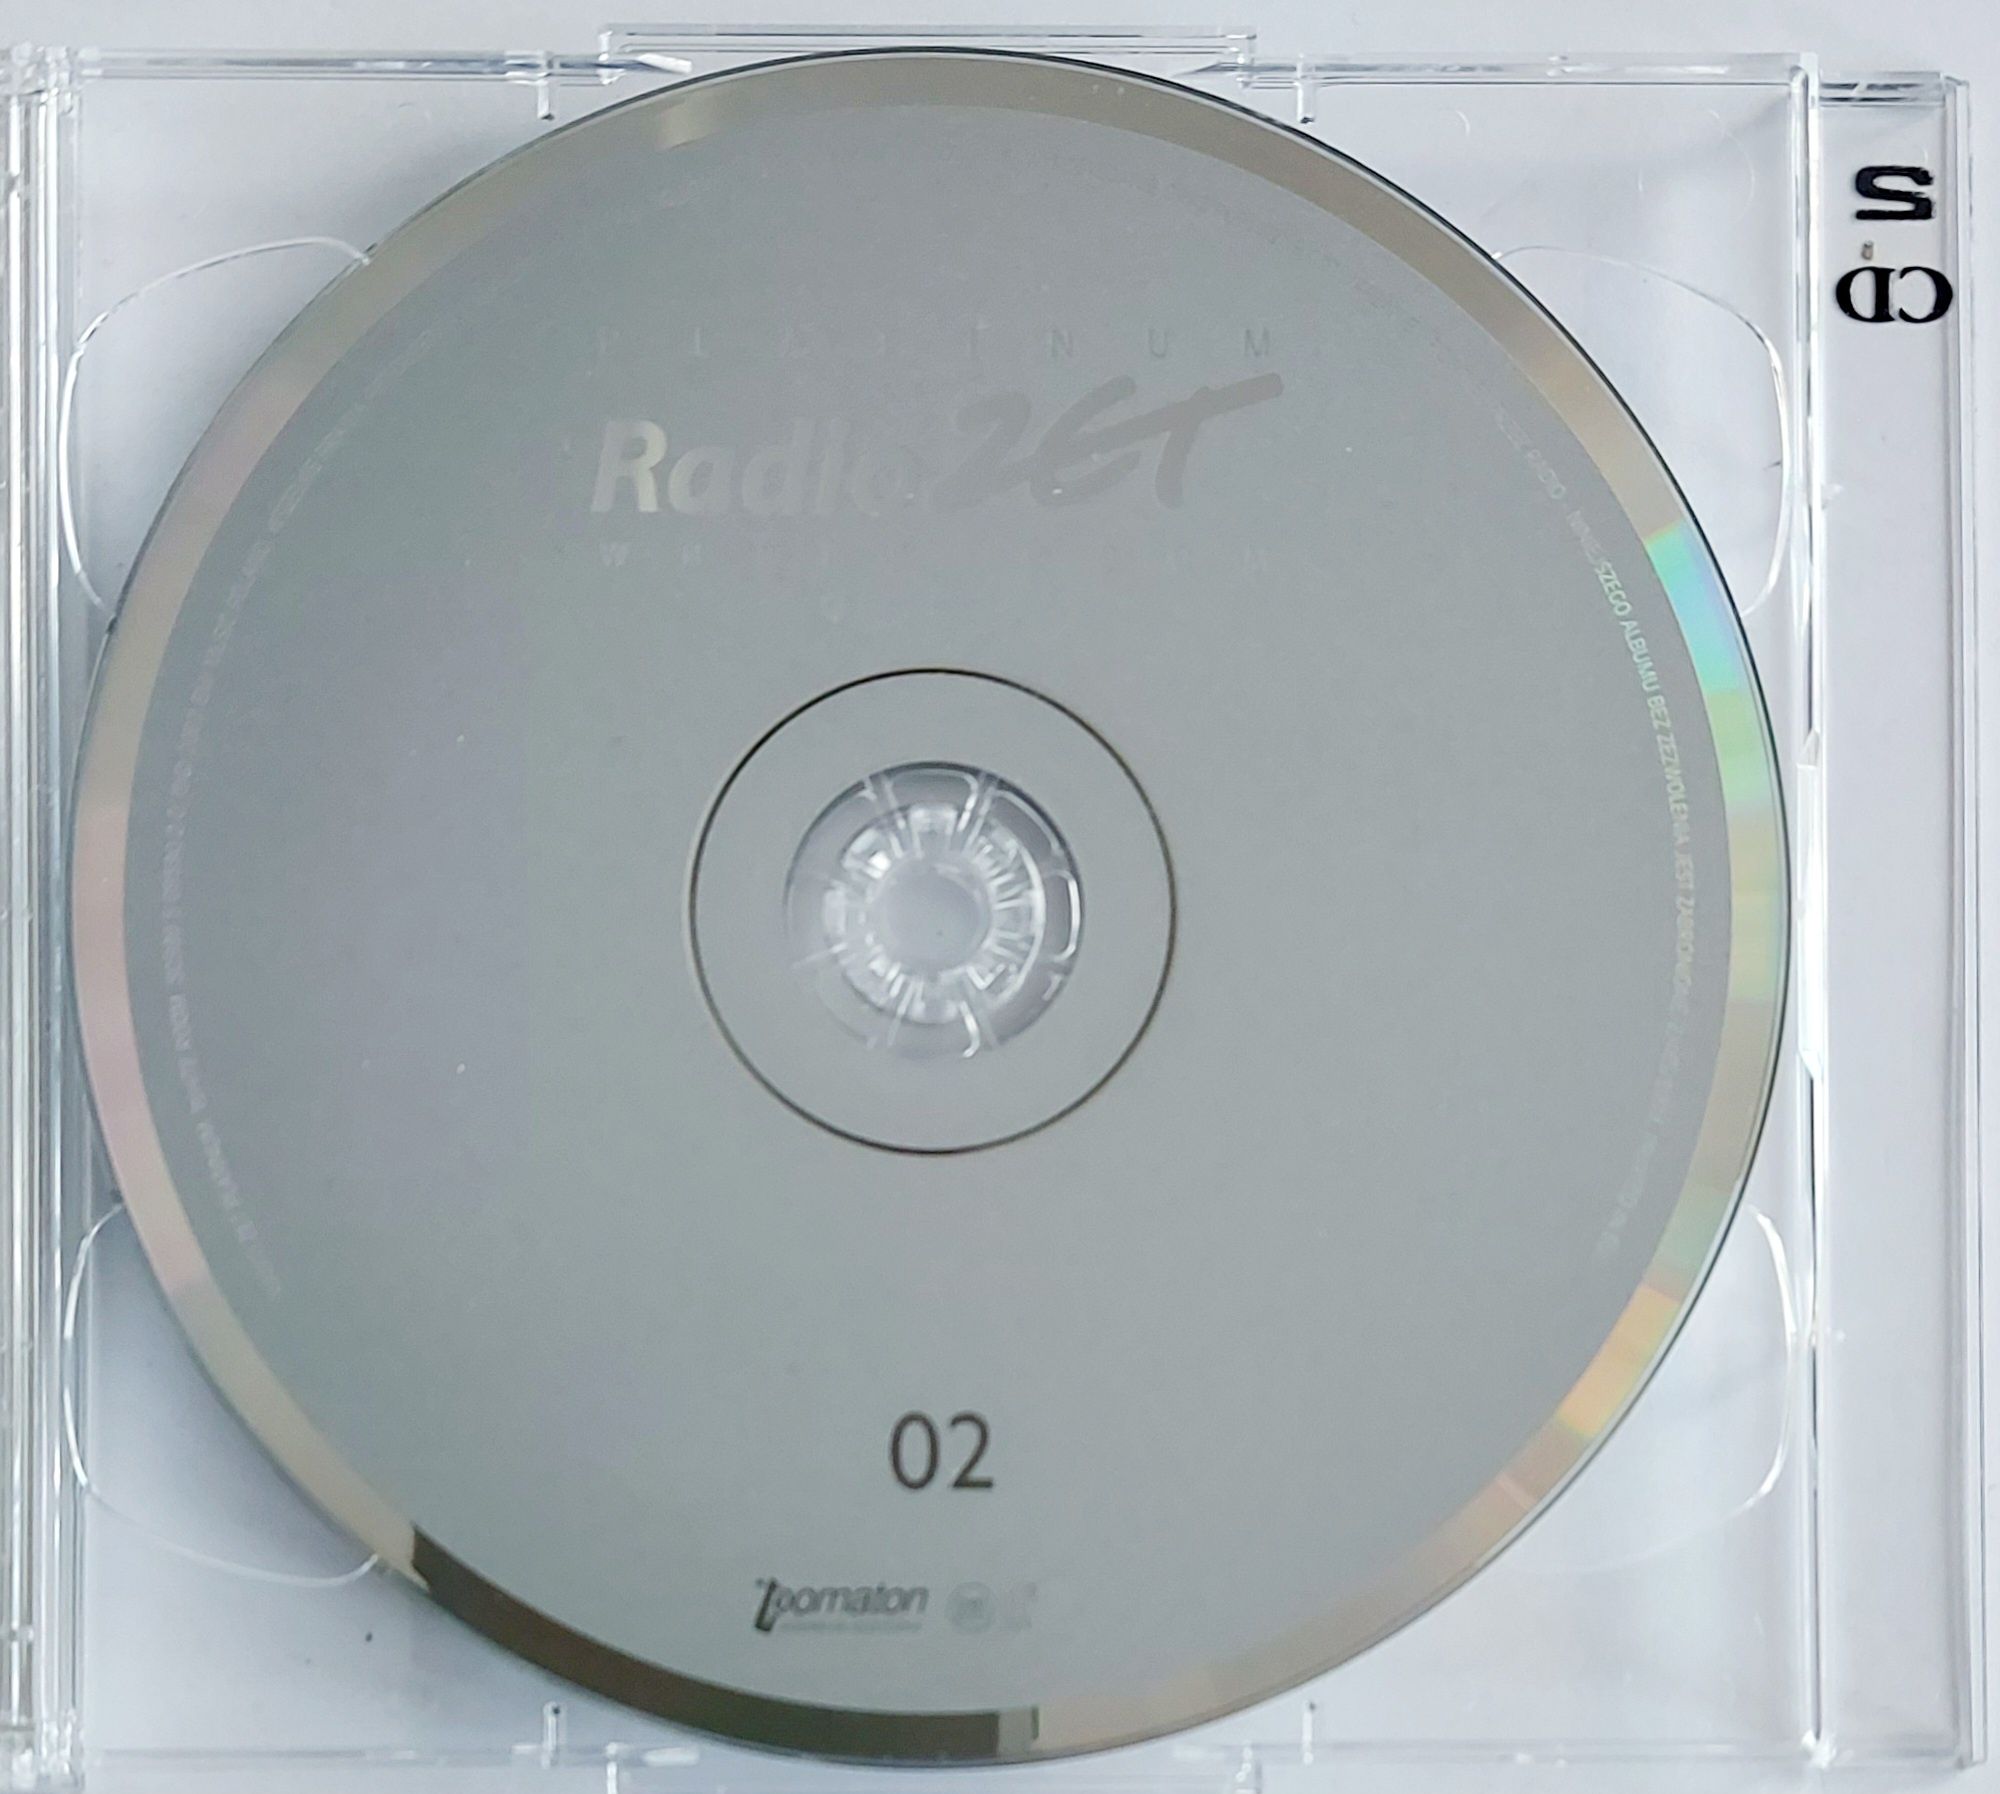 Radio Zet Platinum White Room 2CD 2007r Air Ayo Dido Coldplay Ilya